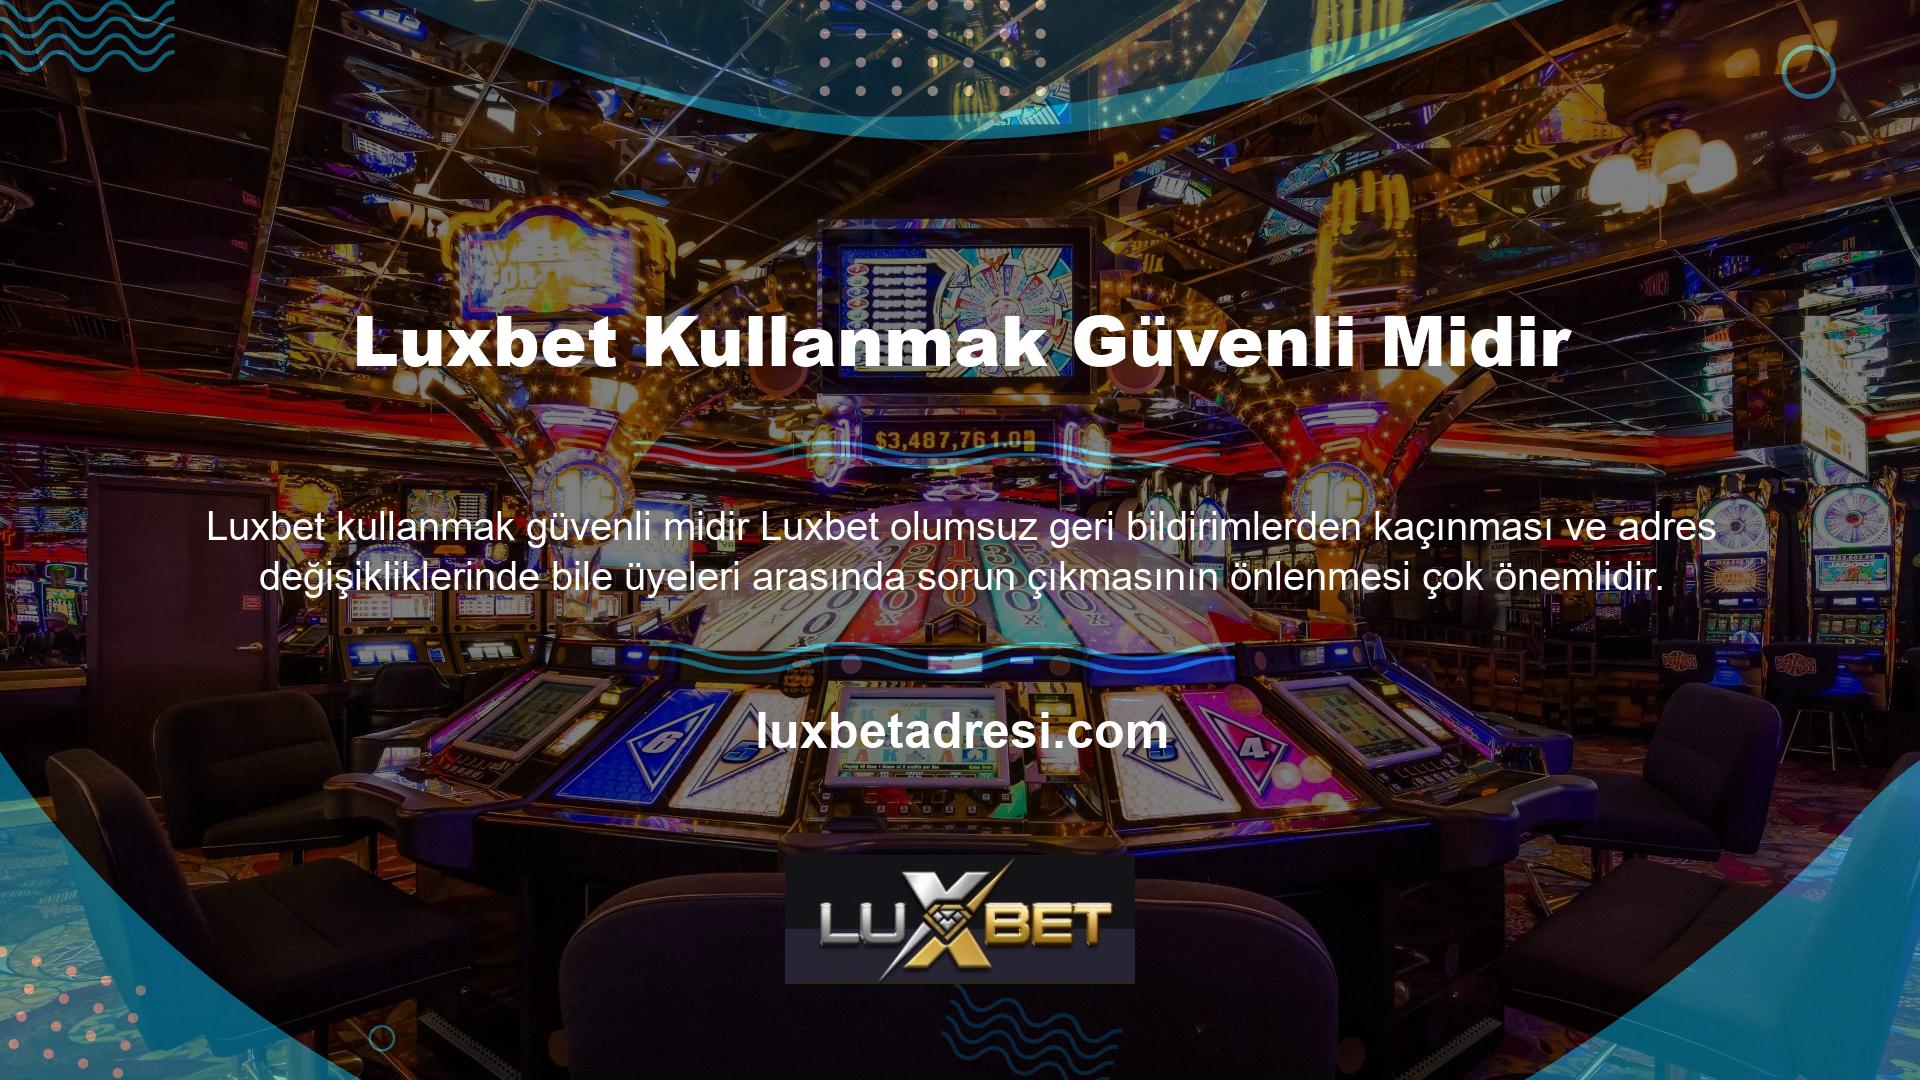 Luxbet, tüm para çekme ve bonus talepleri için her zaman ücretsiz olan 7/24 müşteri hizmeti sunmaktadır